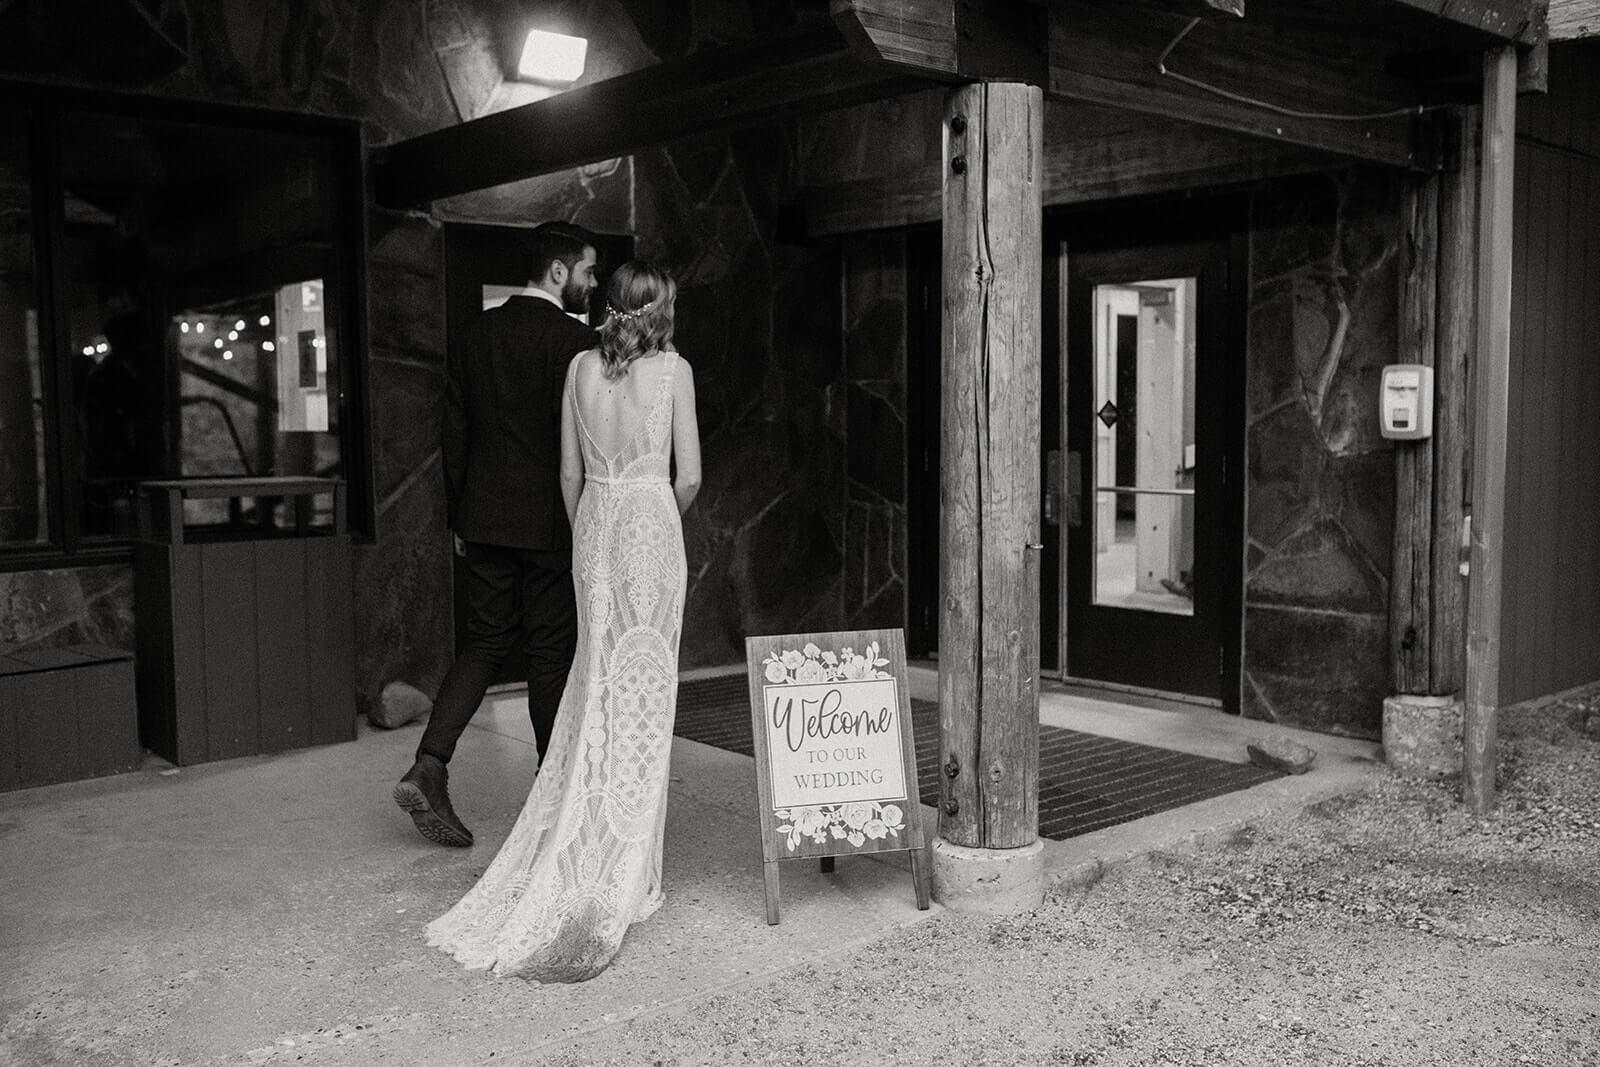 Bride and groom entering reception at ski wedding